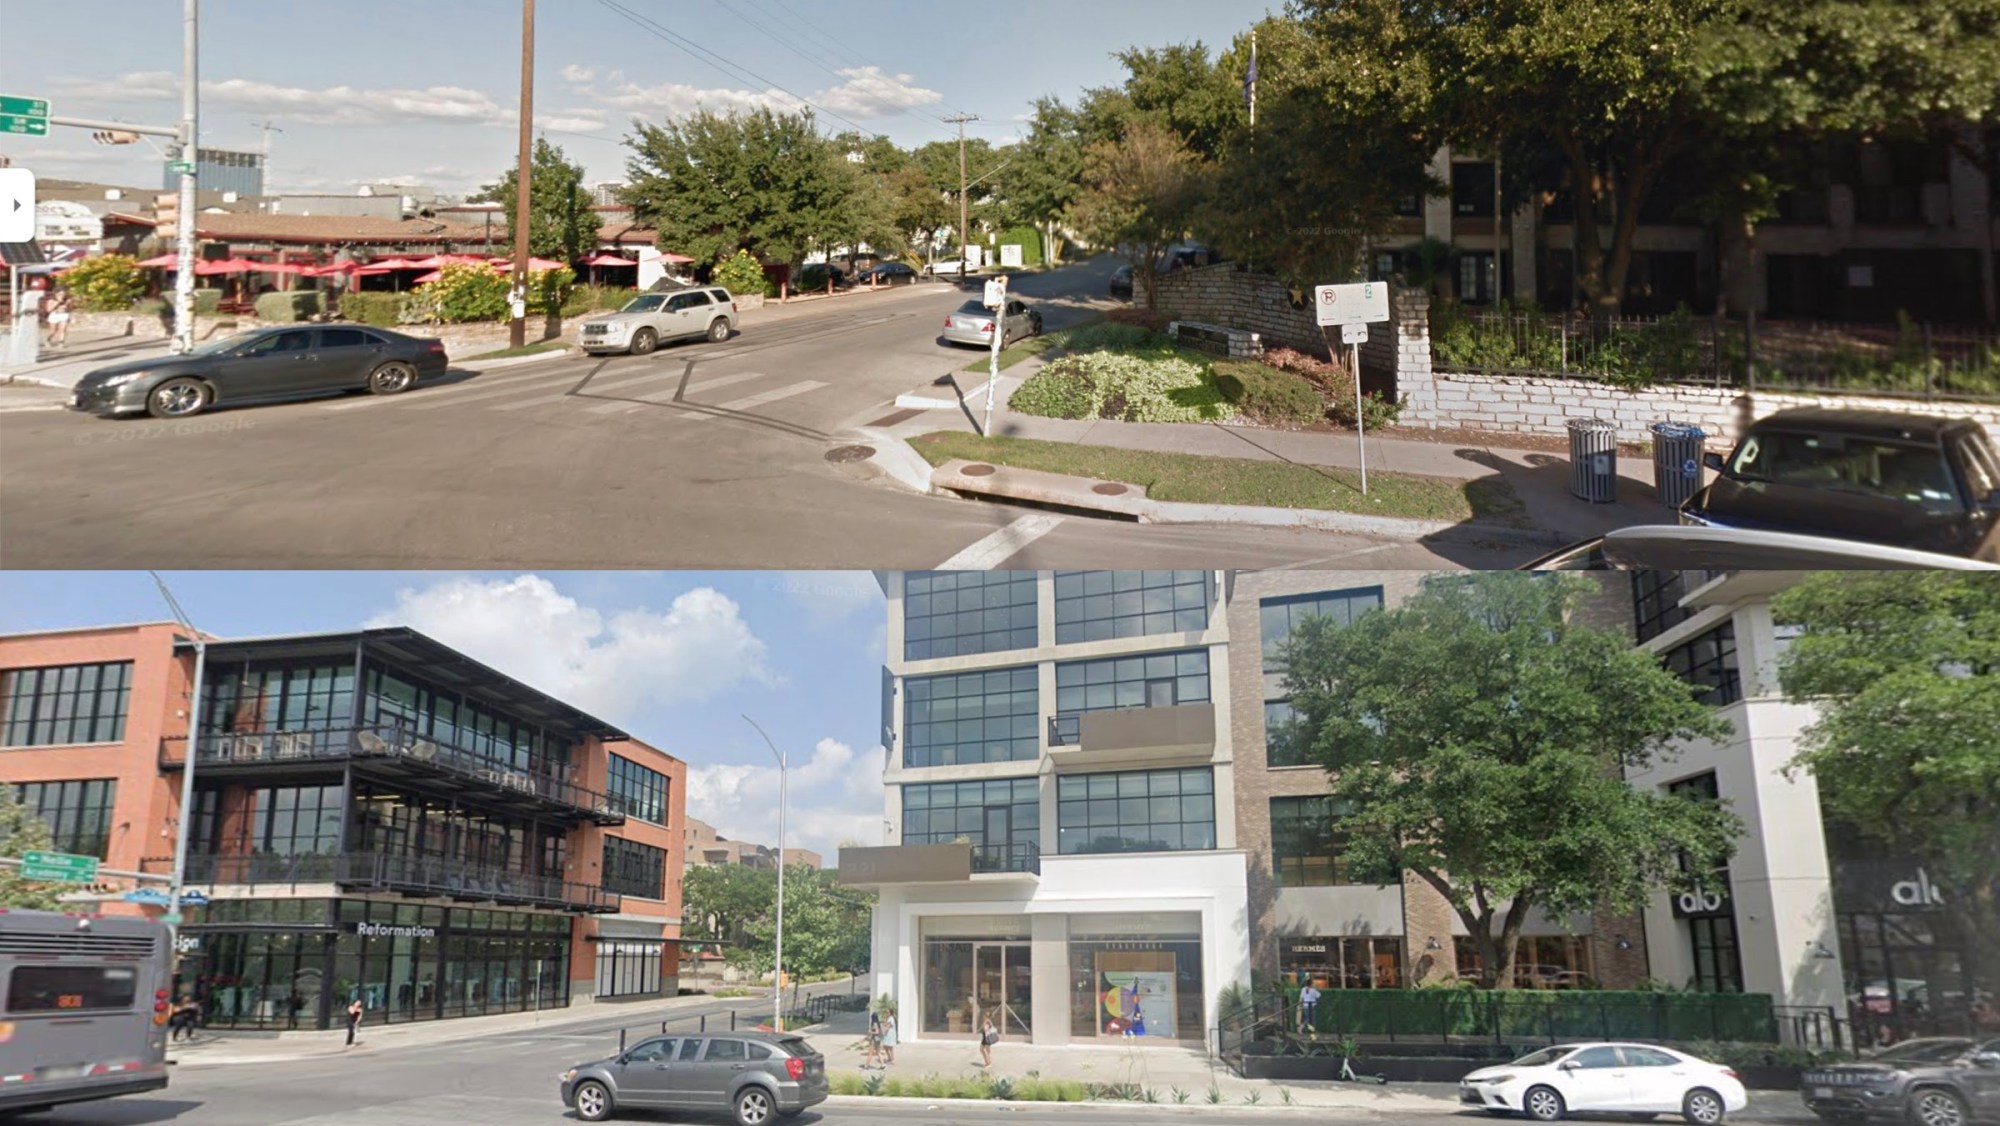 Austin Google Street View screenshots